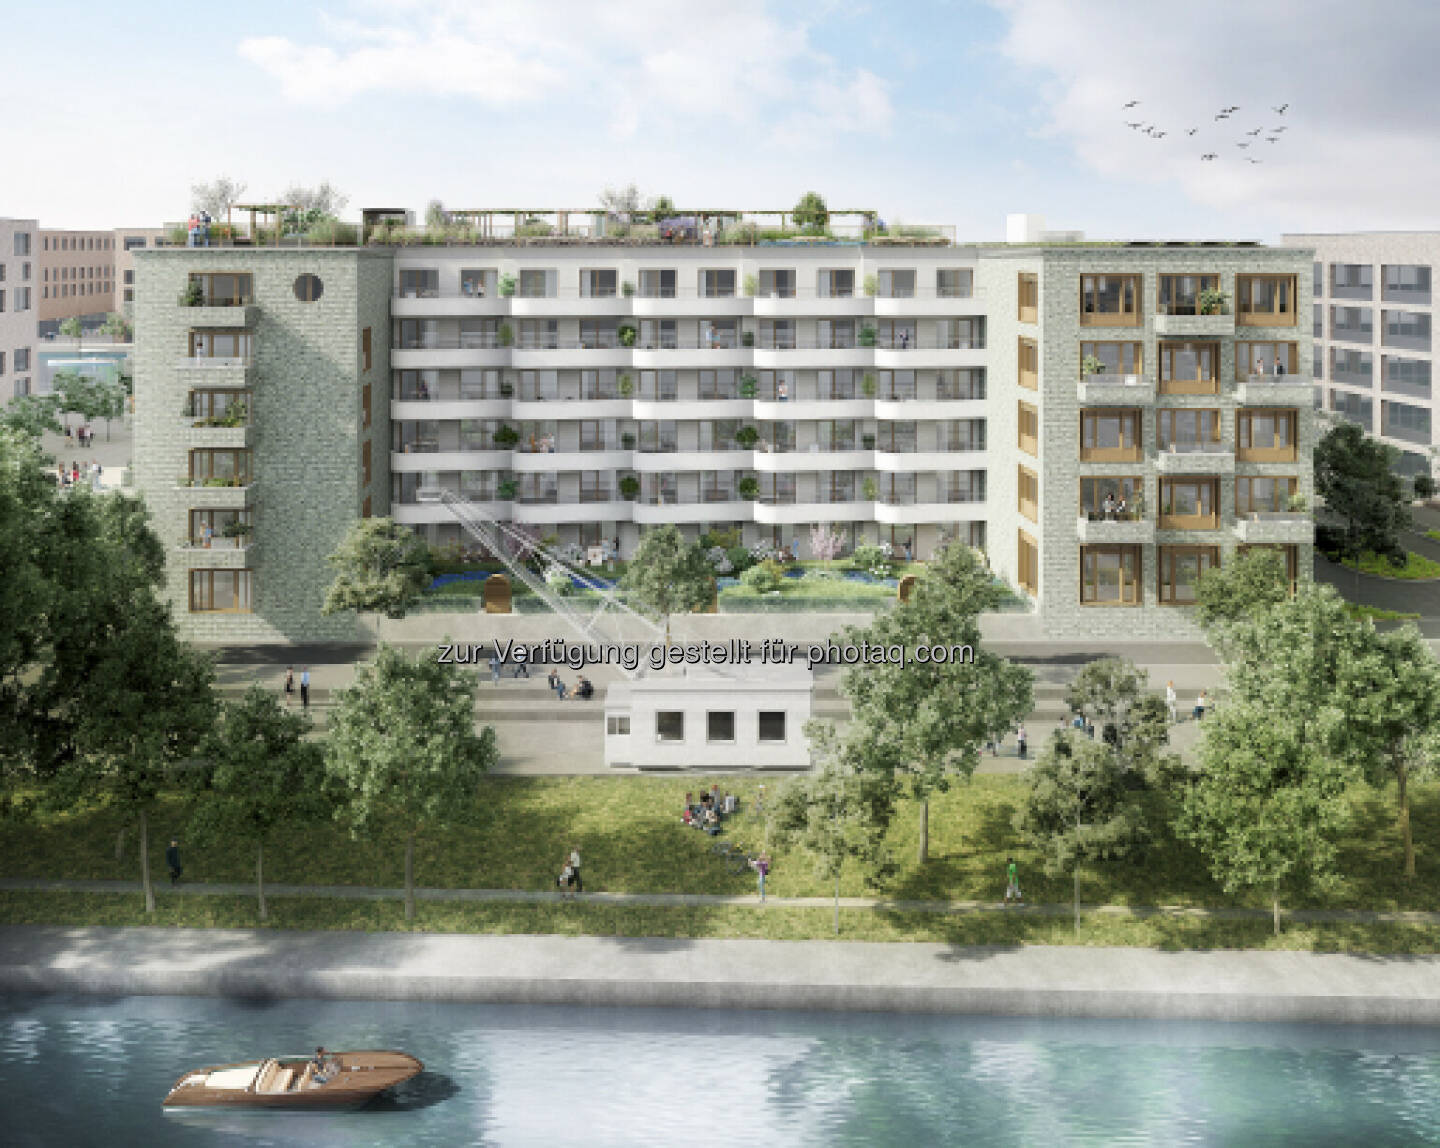 Mit dem Spatenstich für das von UBM Development entwickelte Wohn- und Bürogebäude HAVN erhält der Zollhafen Mainz einen weiteren prominenten Zugang. Credit: Sichtvision